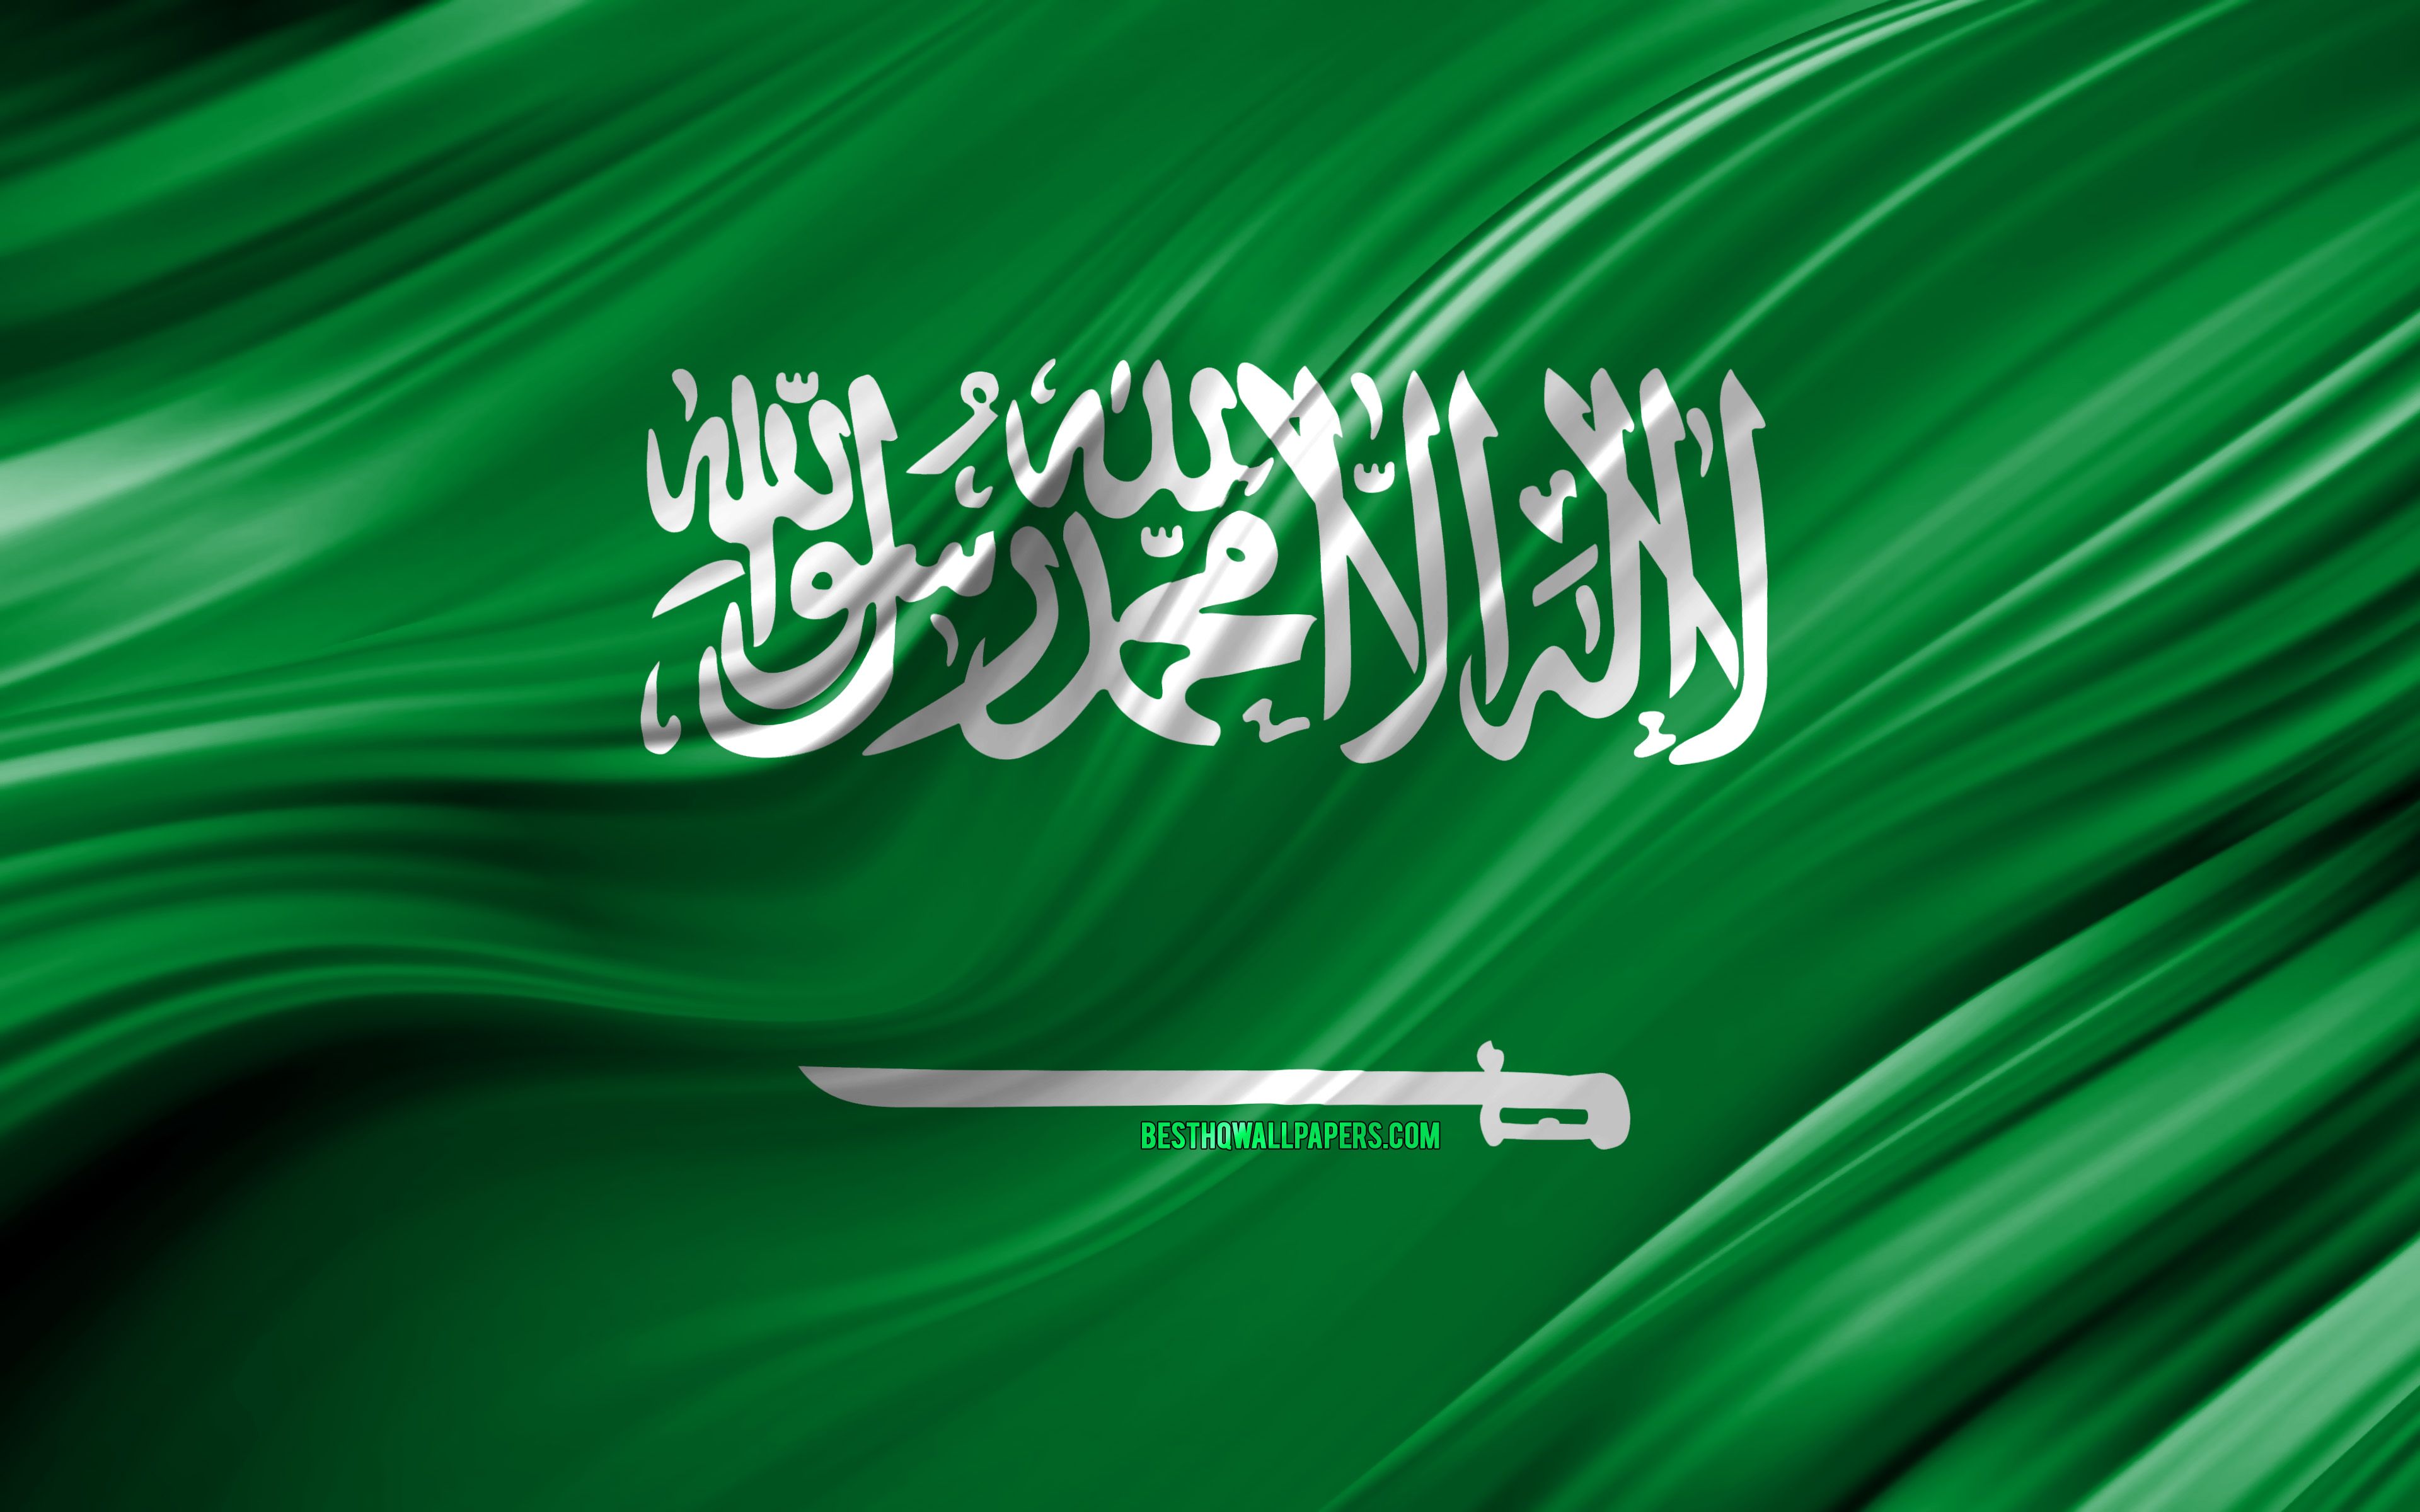 Саудовская Аравия Flag